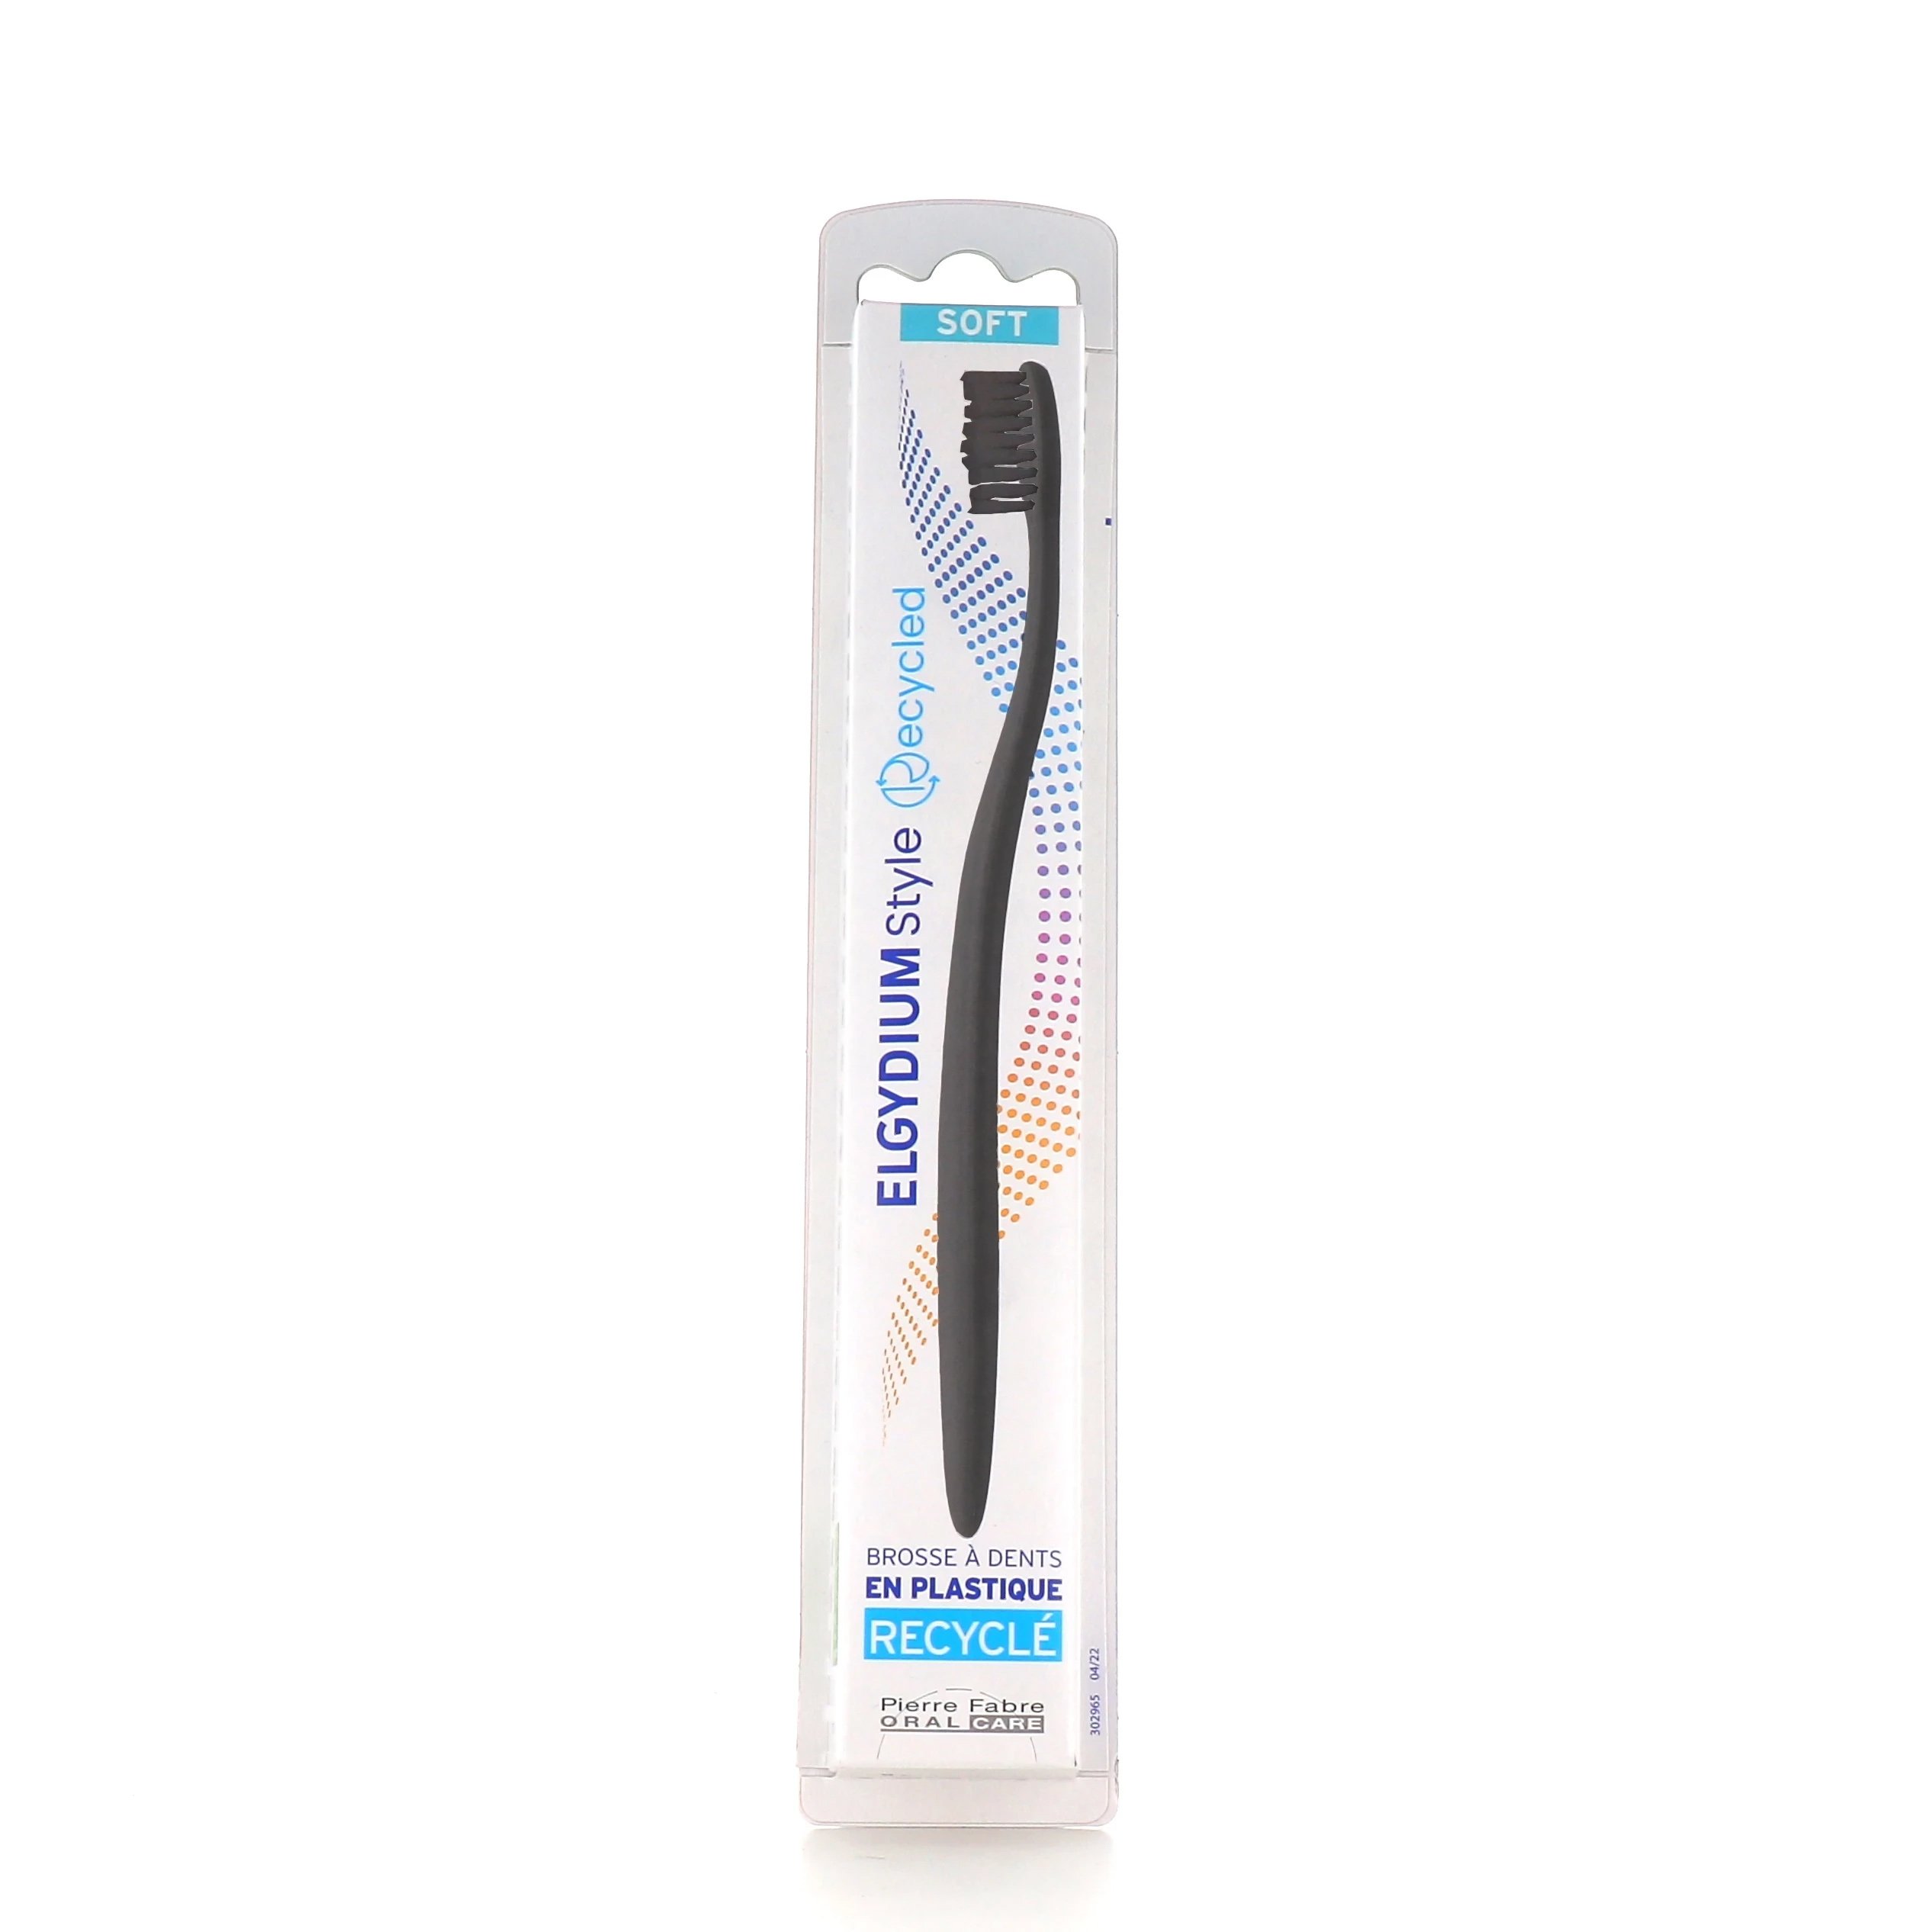 Elgydium Style Recycled Toothbrush Soft Χειροκίνητη Οδοντόβουρτσα Κατασκευασμένη Από Ανακυκλώσιμα Υλικά 1 Τεμάχιο – Μαύρο